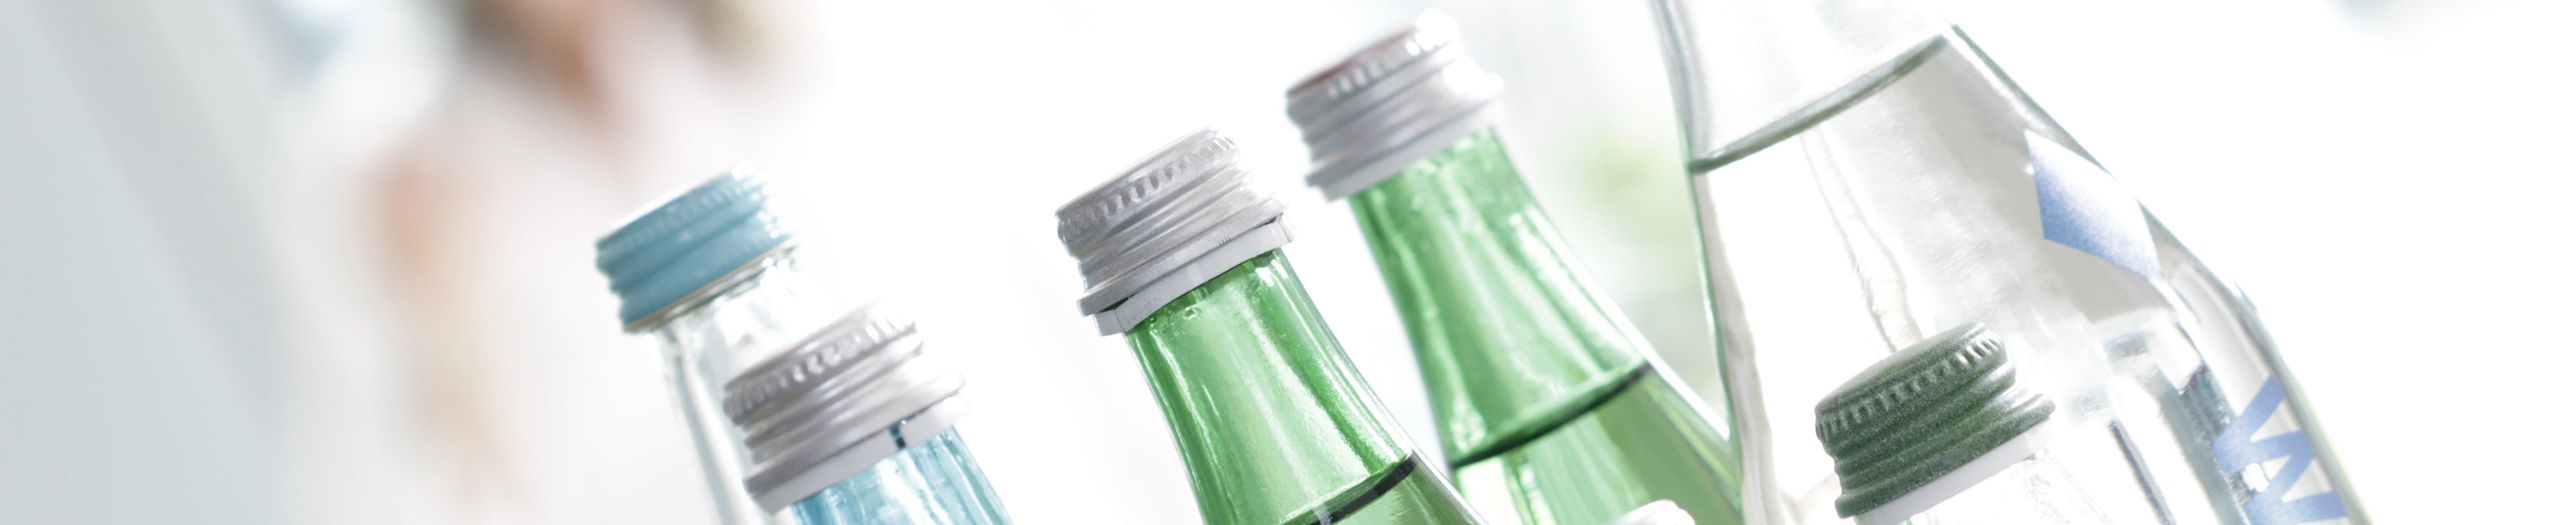 Bottlenecks of water bottles